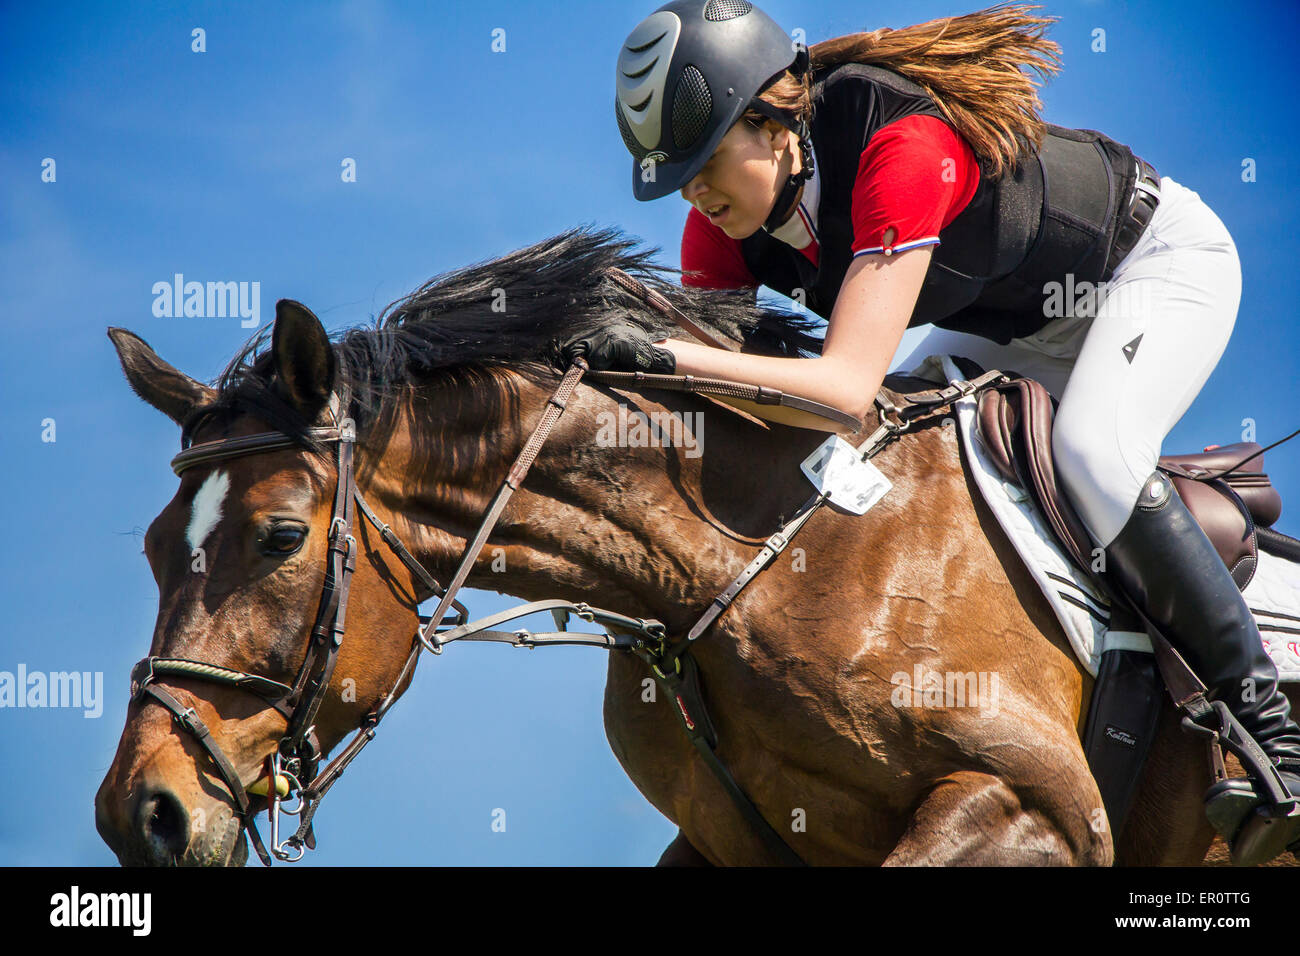 ZAGREB, CROATIE - Mai 09 : un cavalier sur un cheval au cours de la compétition de sauts équestres à l'Hippodrome de Zagreb Banque D'Images